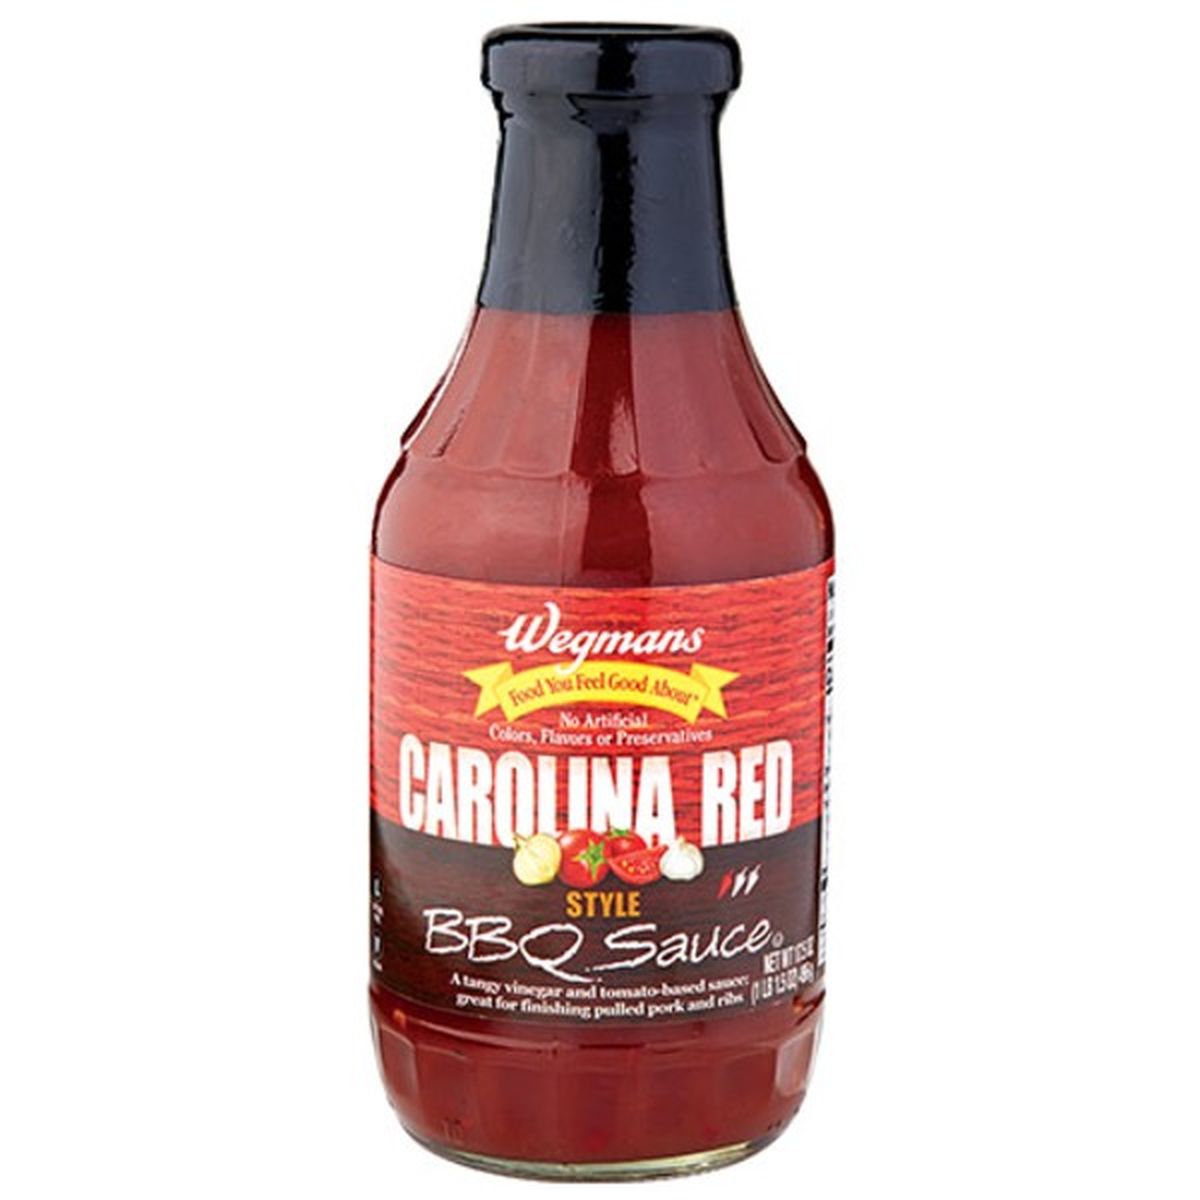 Calories in Wegmans Red Carolina BBQ Sauce